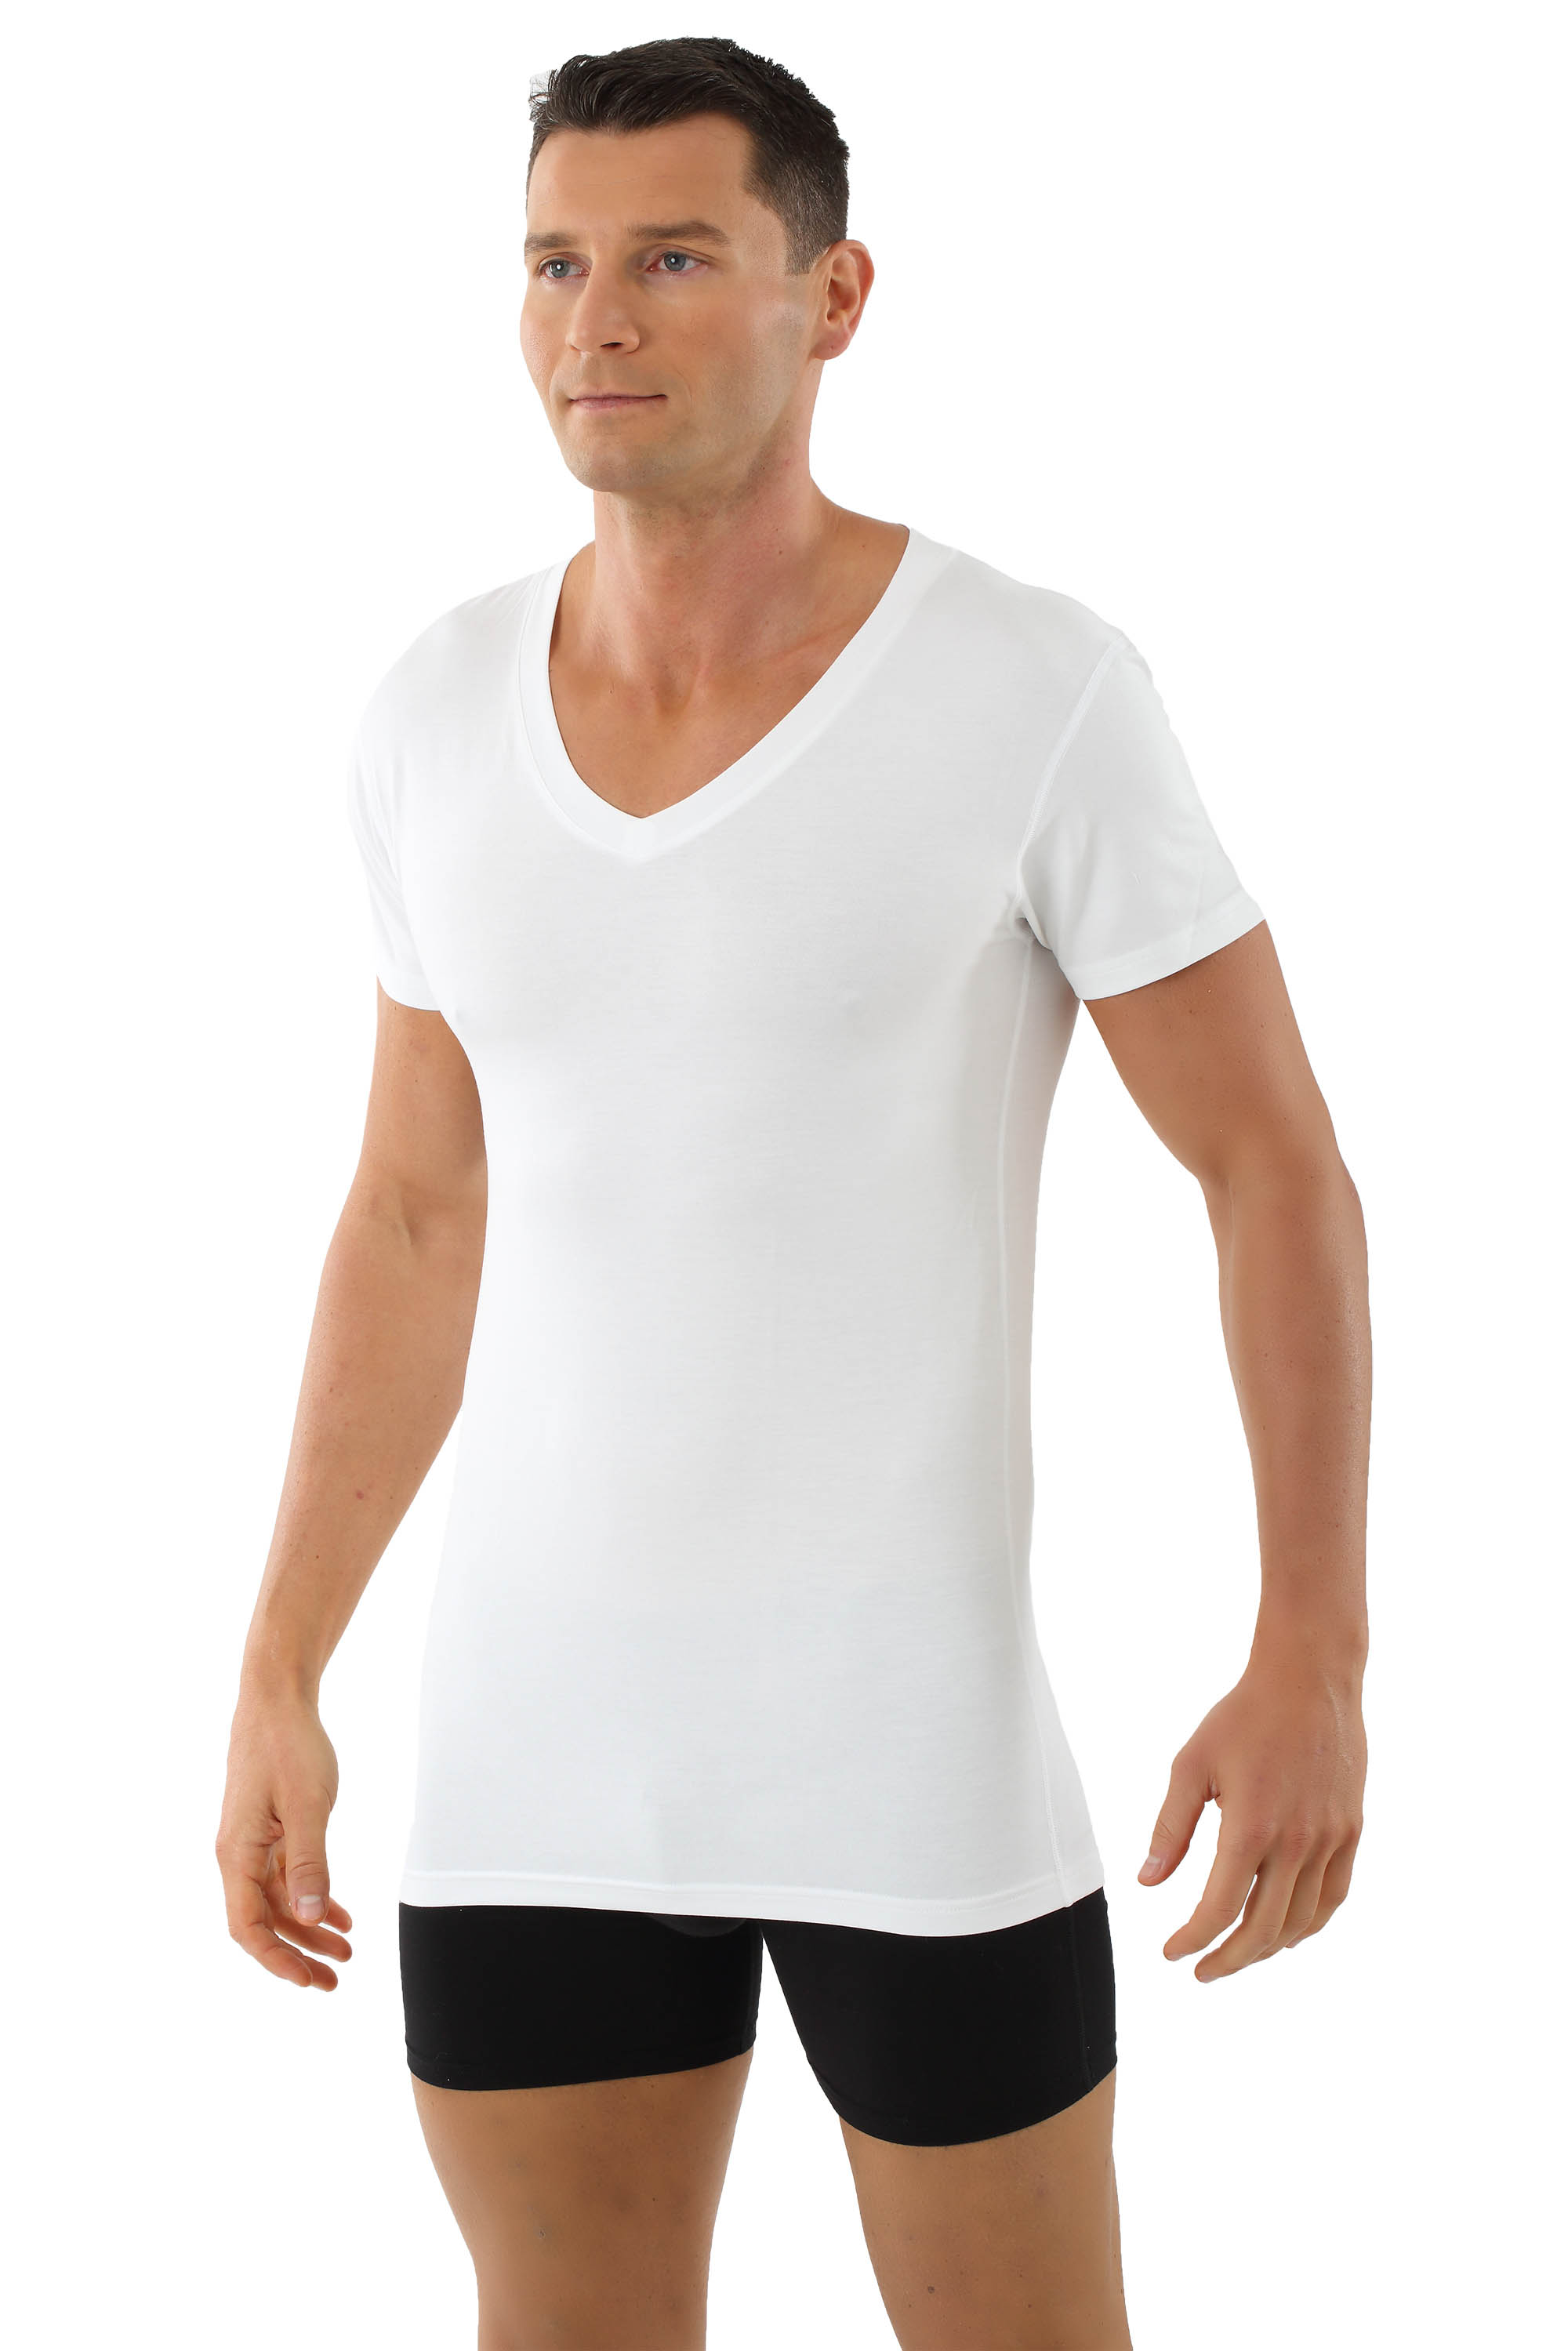 Albert Kreuz Men S Microfiber Undershirt Stuttgart With Flat V Neck Short Sleeves White